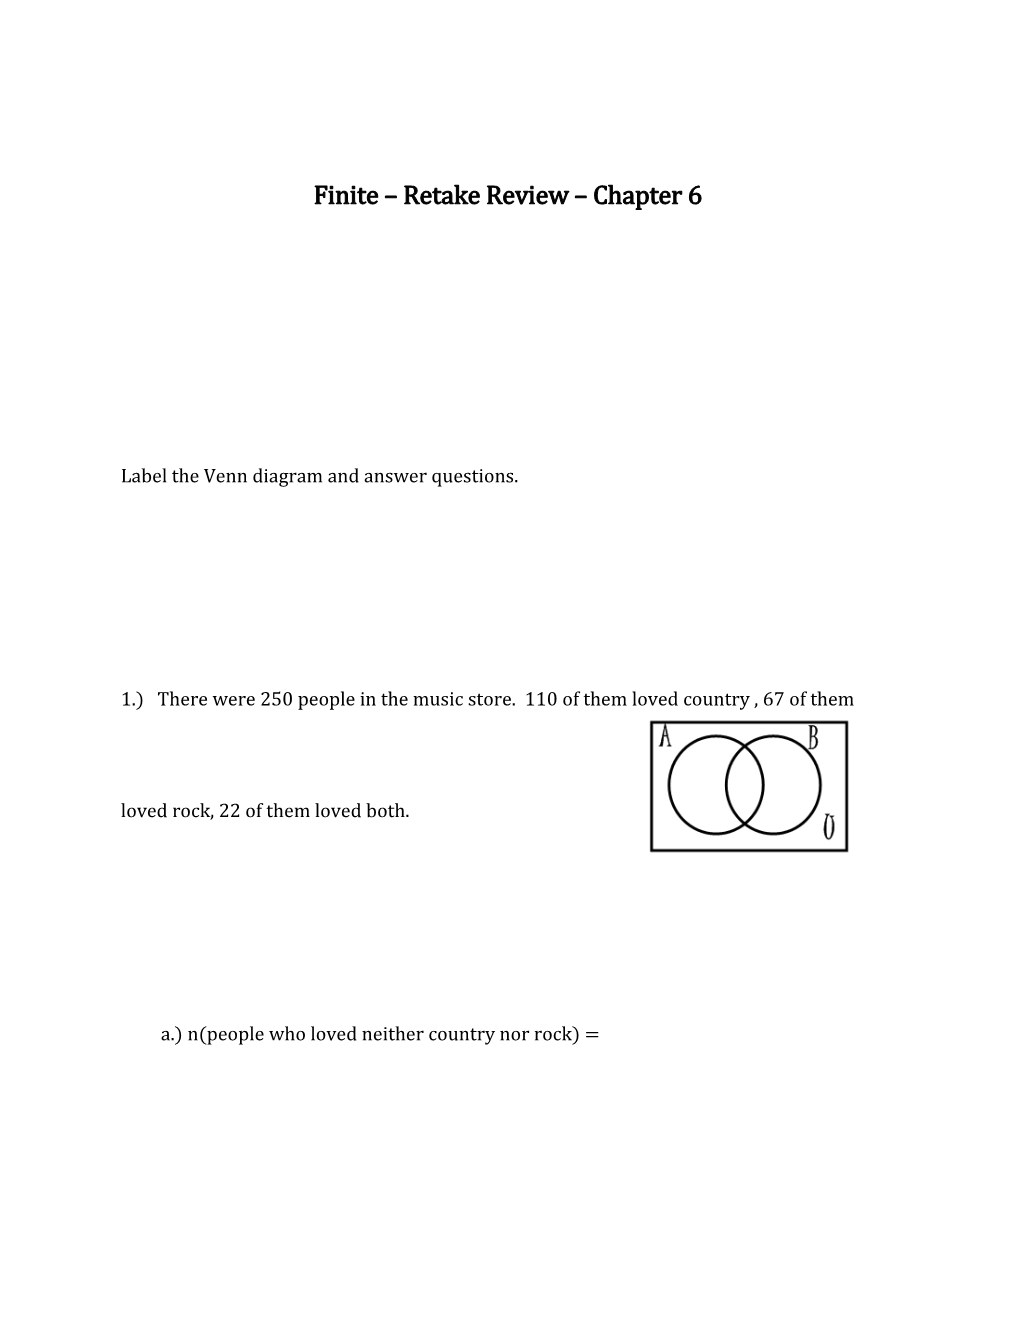 Finite Retake Review Chapter 6